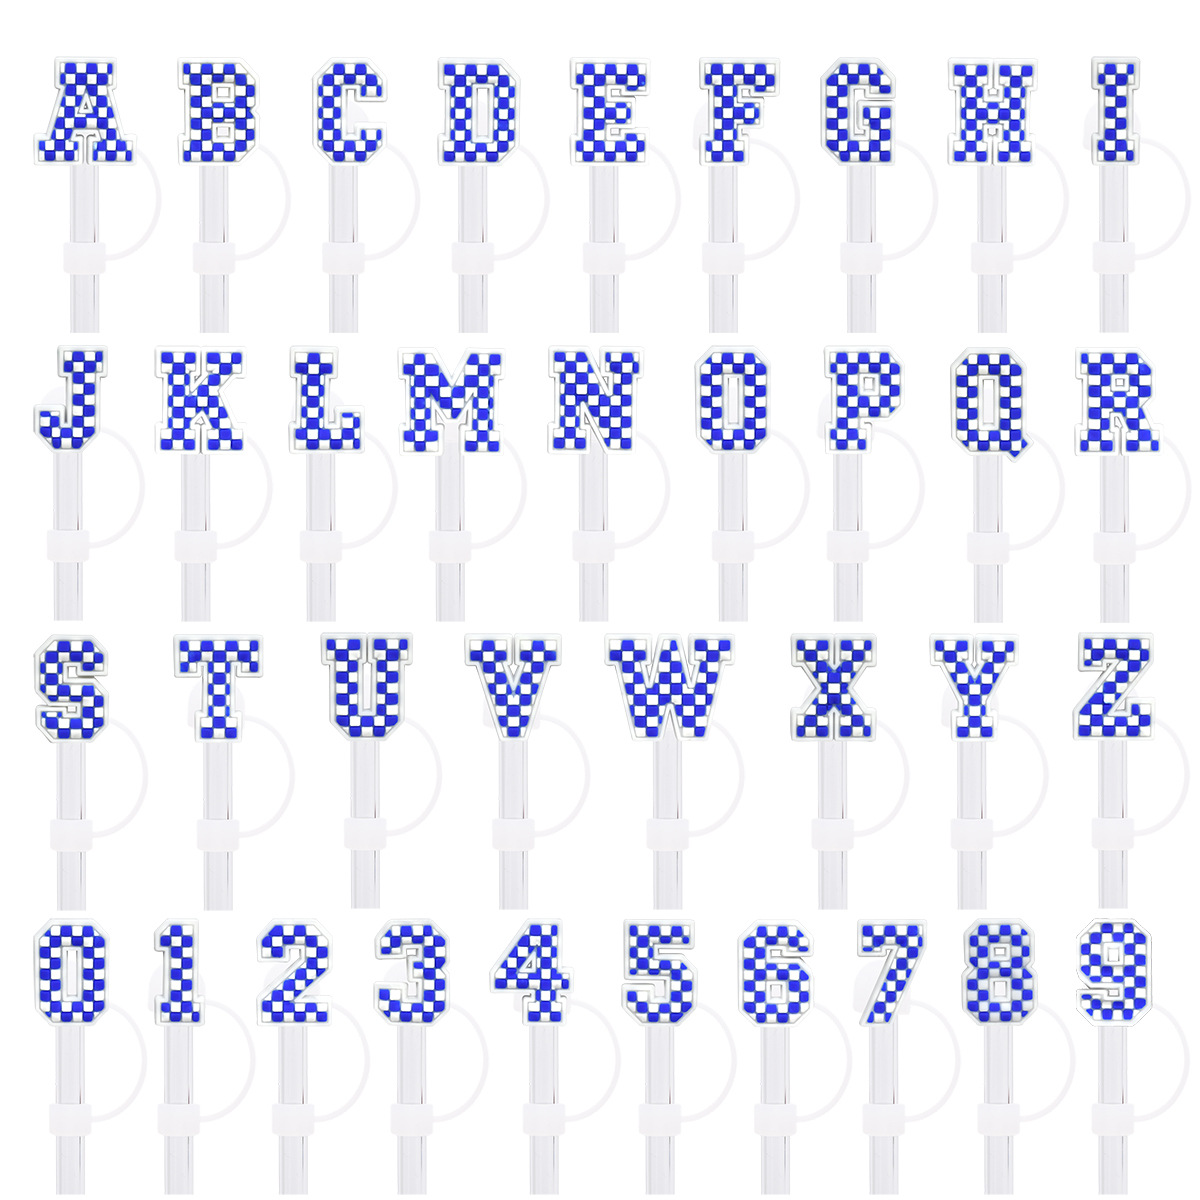 Blaue Zahl, englischer Buchstabe, Silikon-Strohkappe, 10 mm Strohkappe, universelle Dekoration, staubdichte Strohkappe